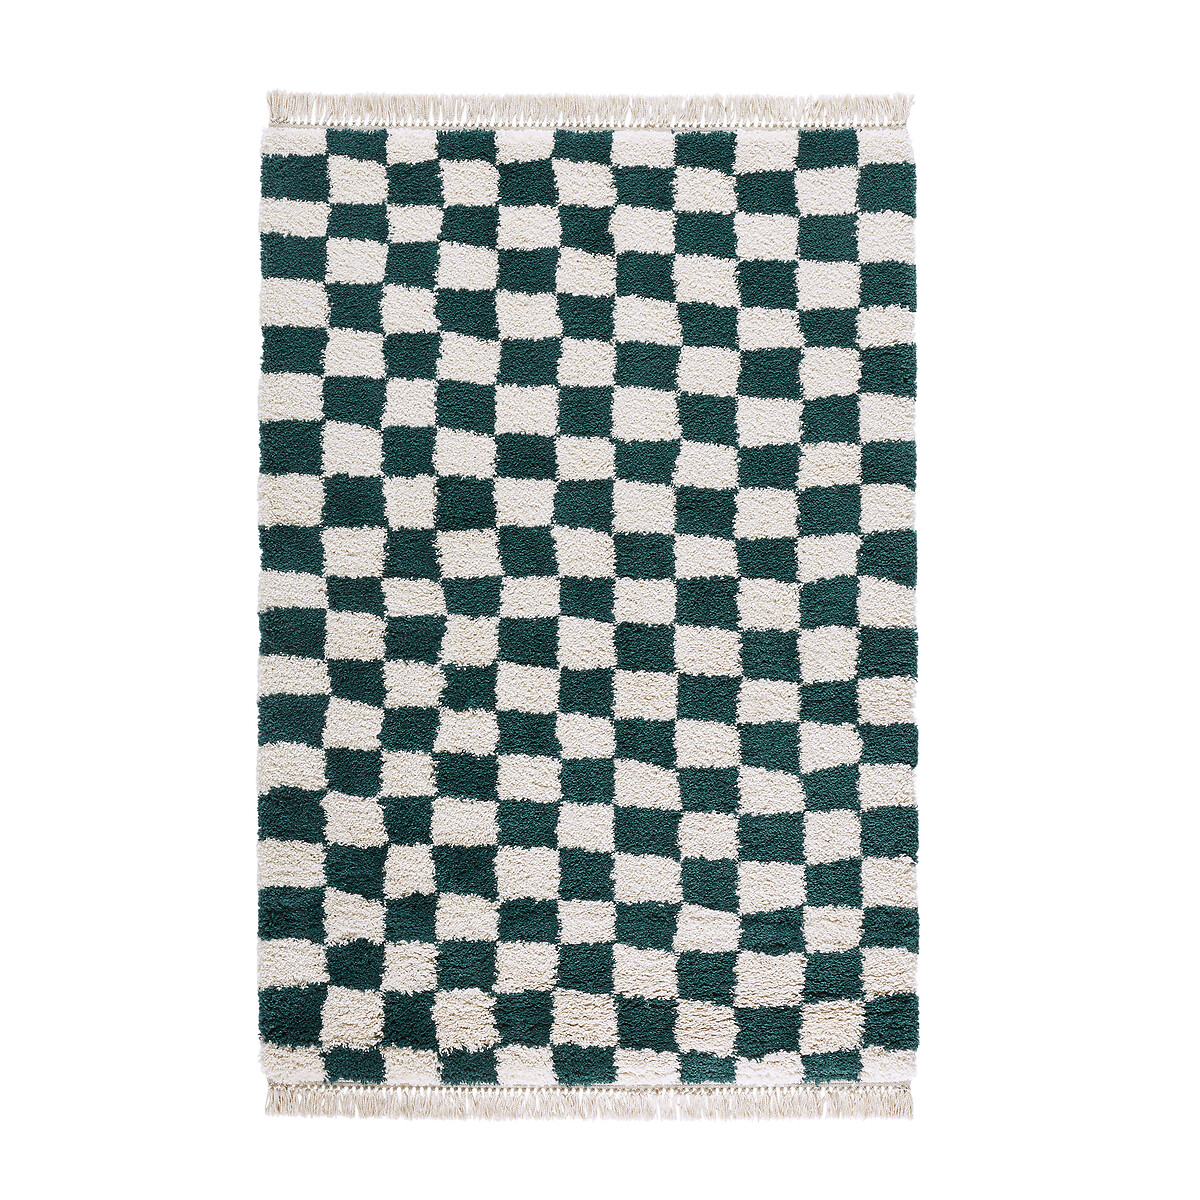 Ковер С шахматным принтом Danito 200 x 290 см зеленый LaRedoute, размер 200 x 290 см - фото 2